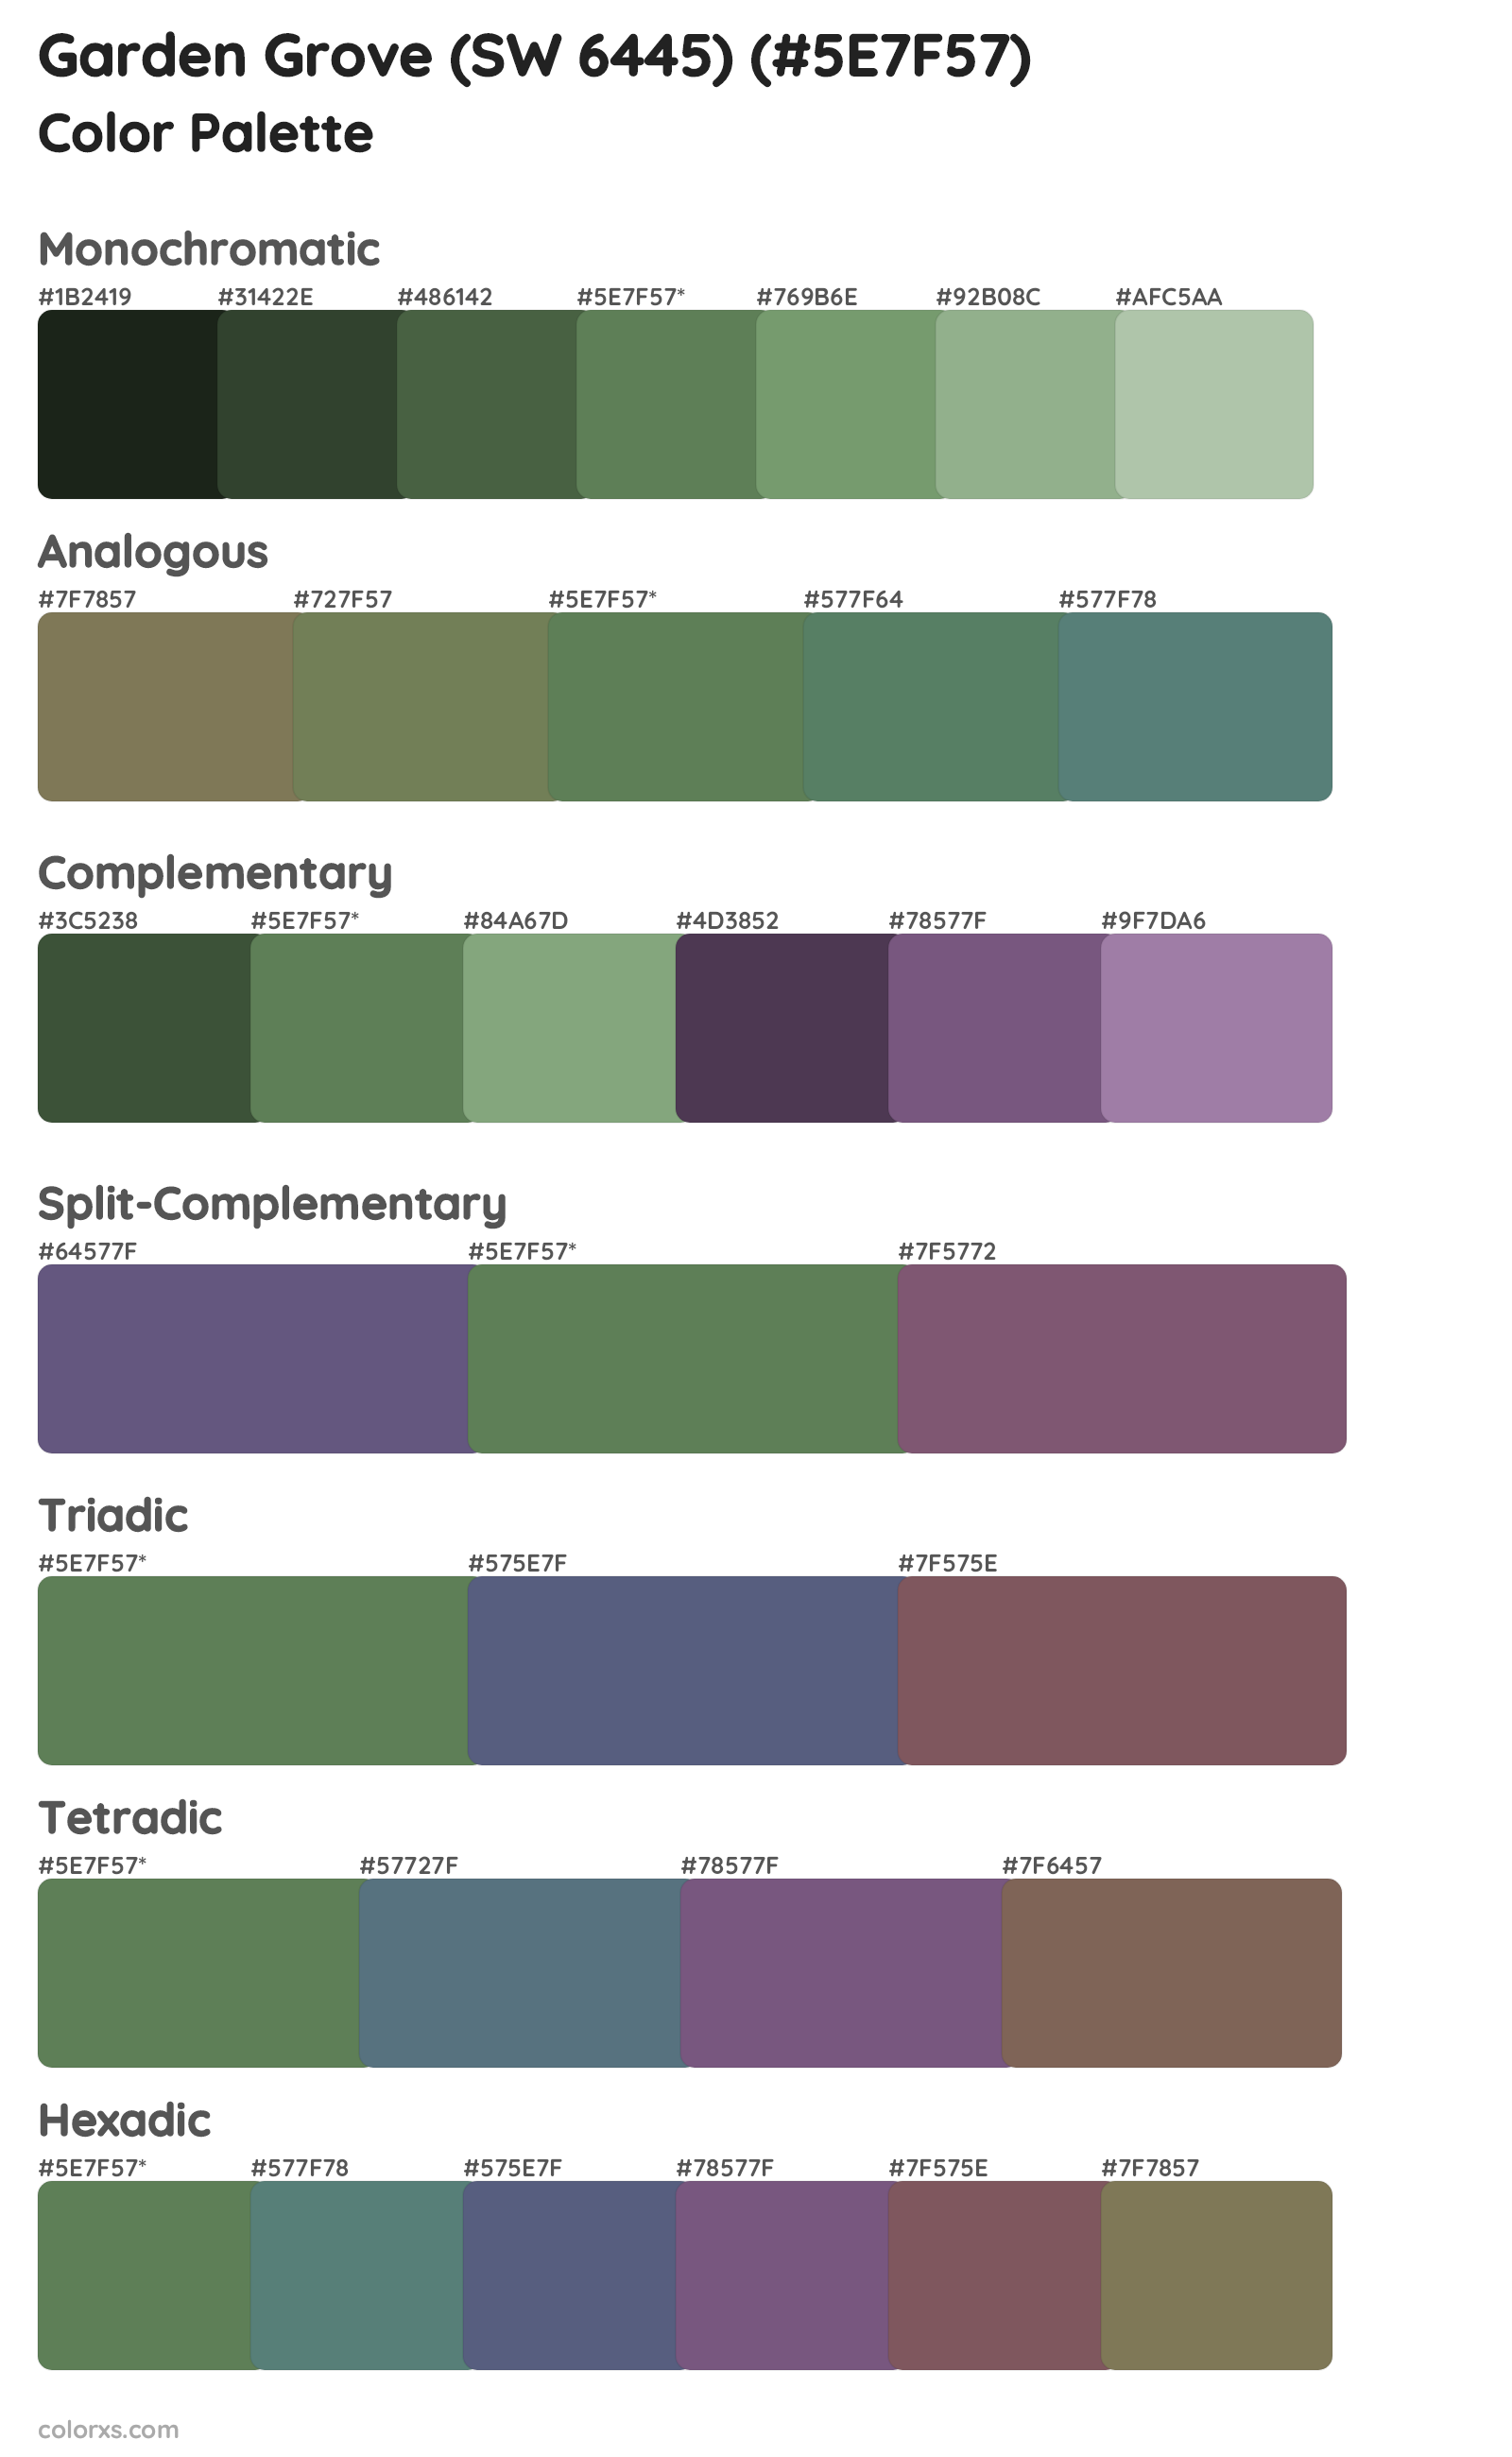 Garden Grove (SW 6445) Color Scheme Palettes